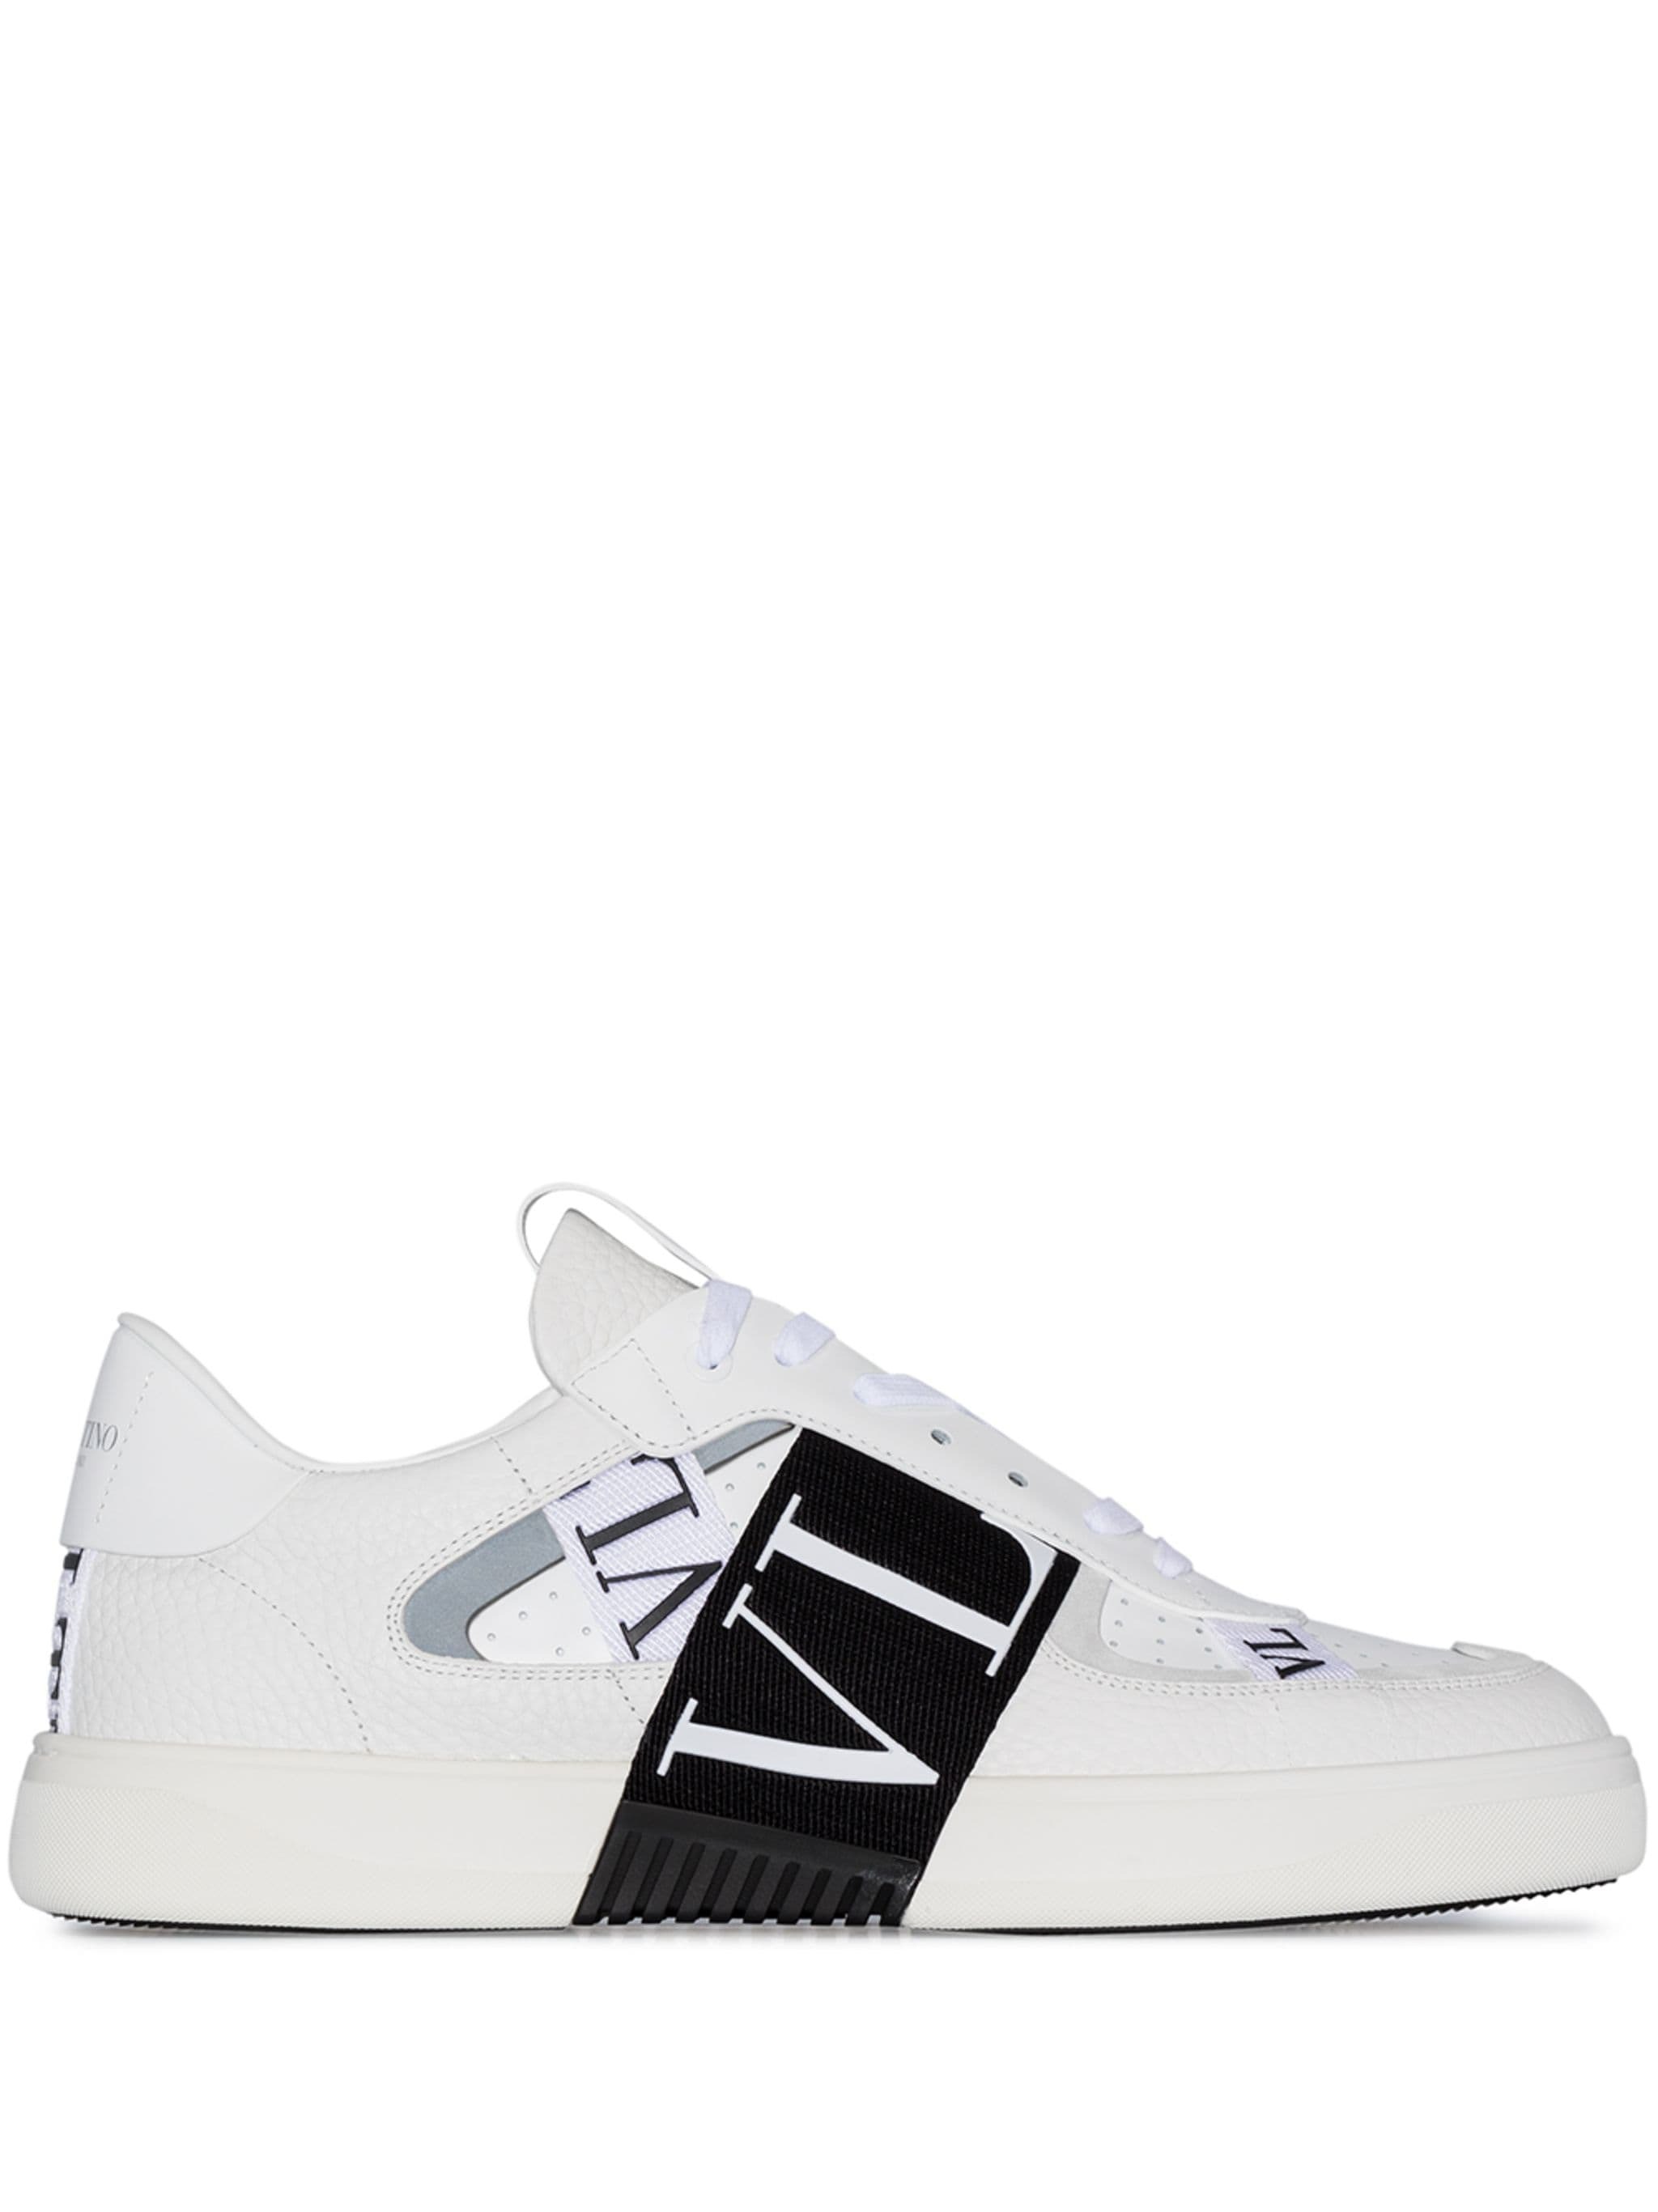 VL7N Low-Top Sneakers